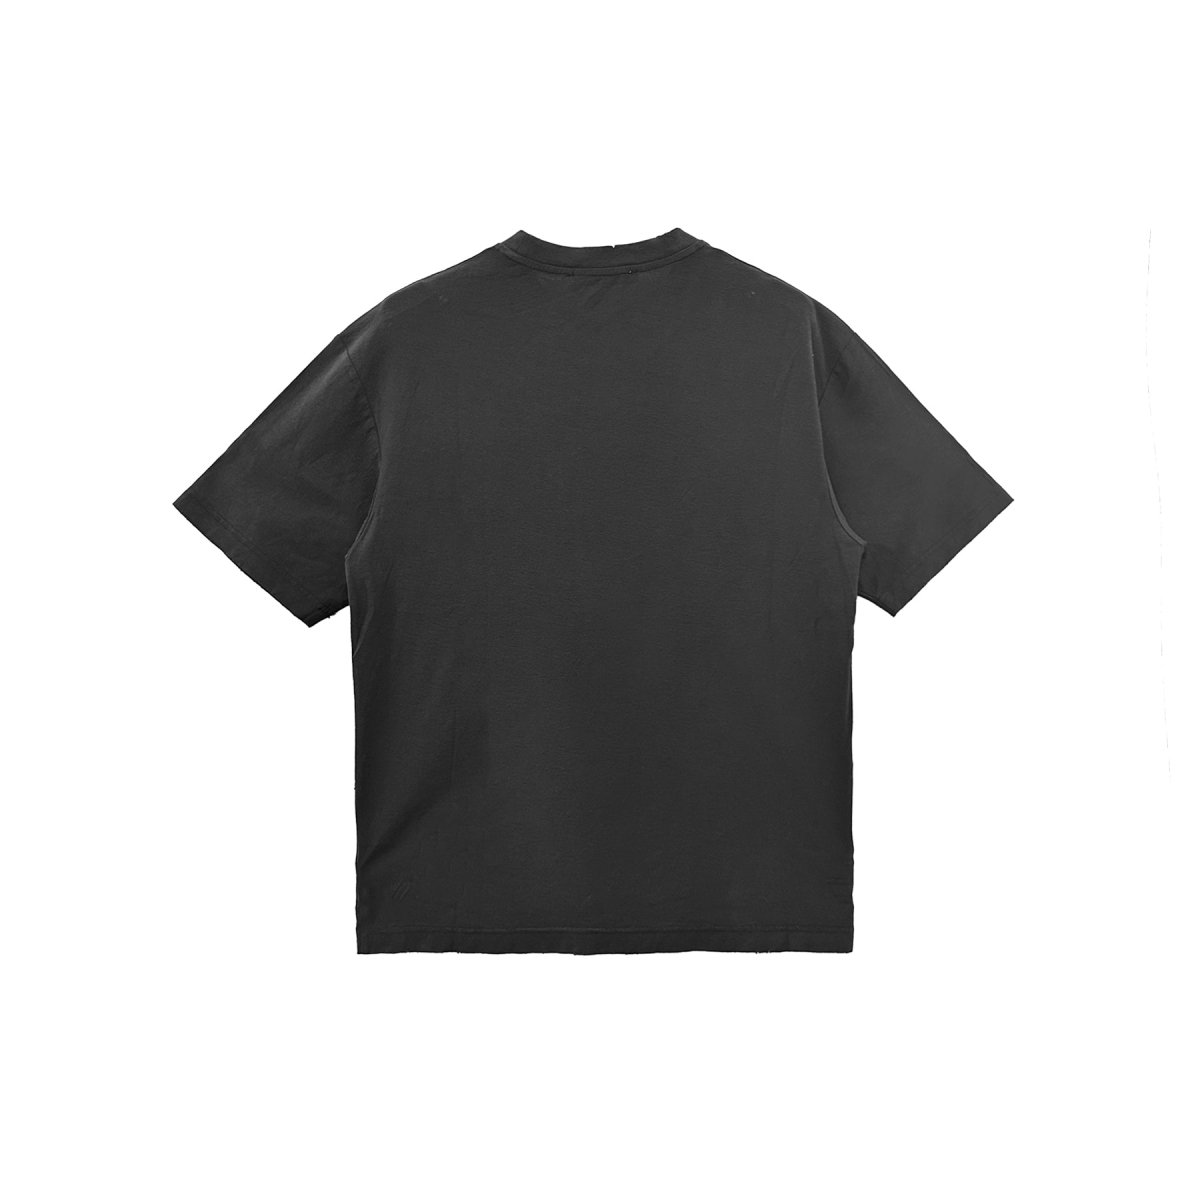 Acne Studios 1996 Washed Black Short Sleeve T - Shirt - SHENGLI ROAD MARKET